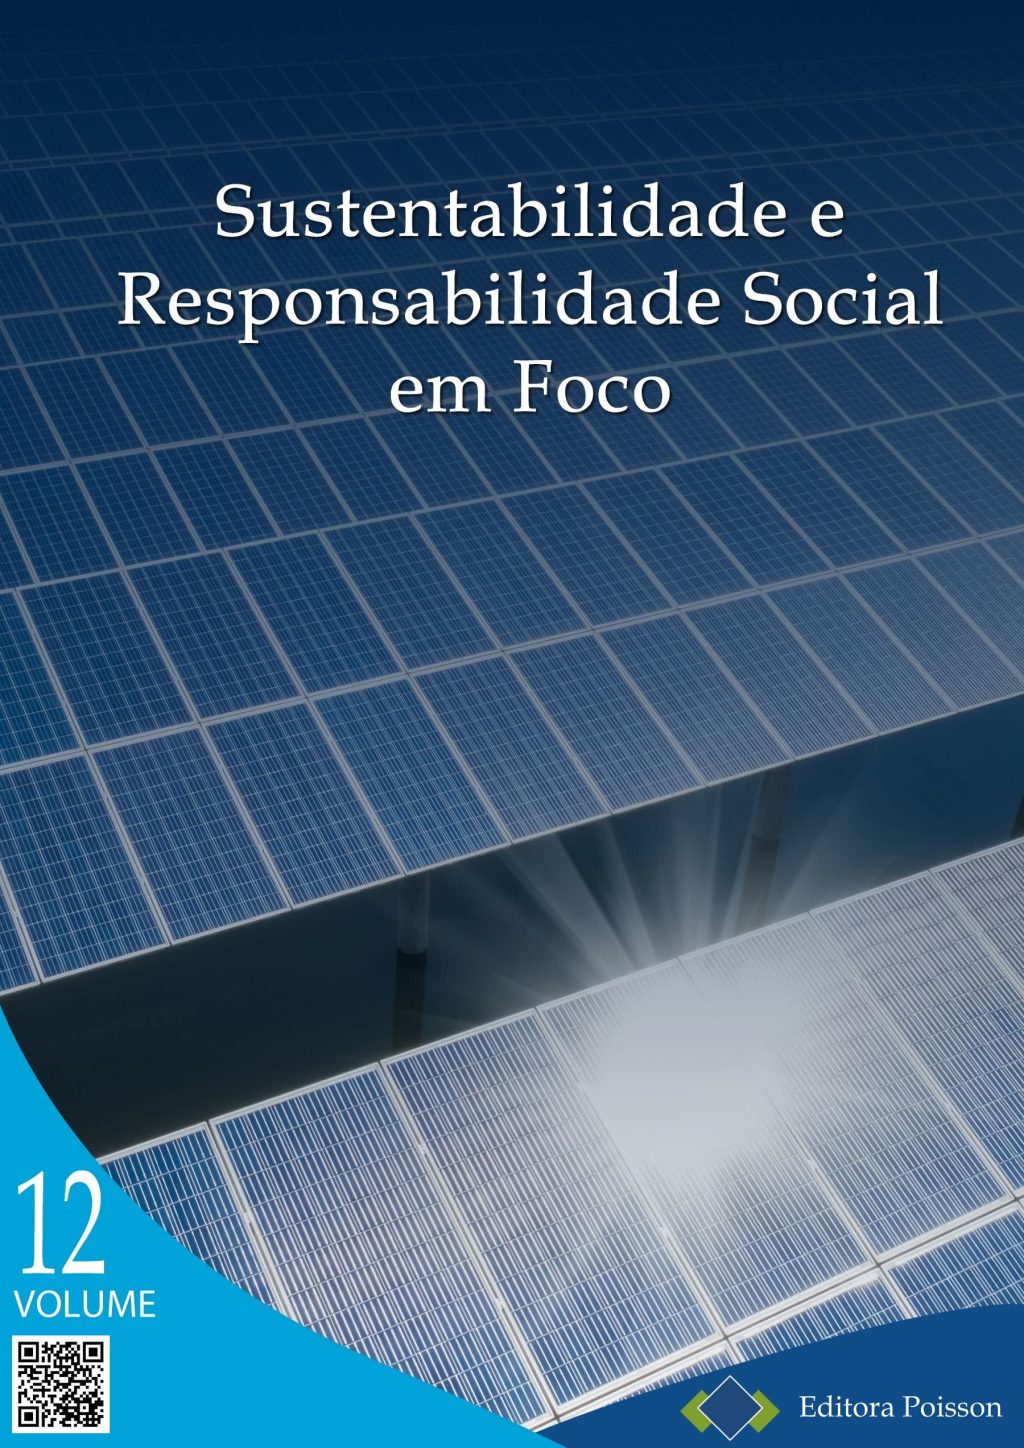 Sustentabilidade e Responsabilidade em Foco – Volume 12